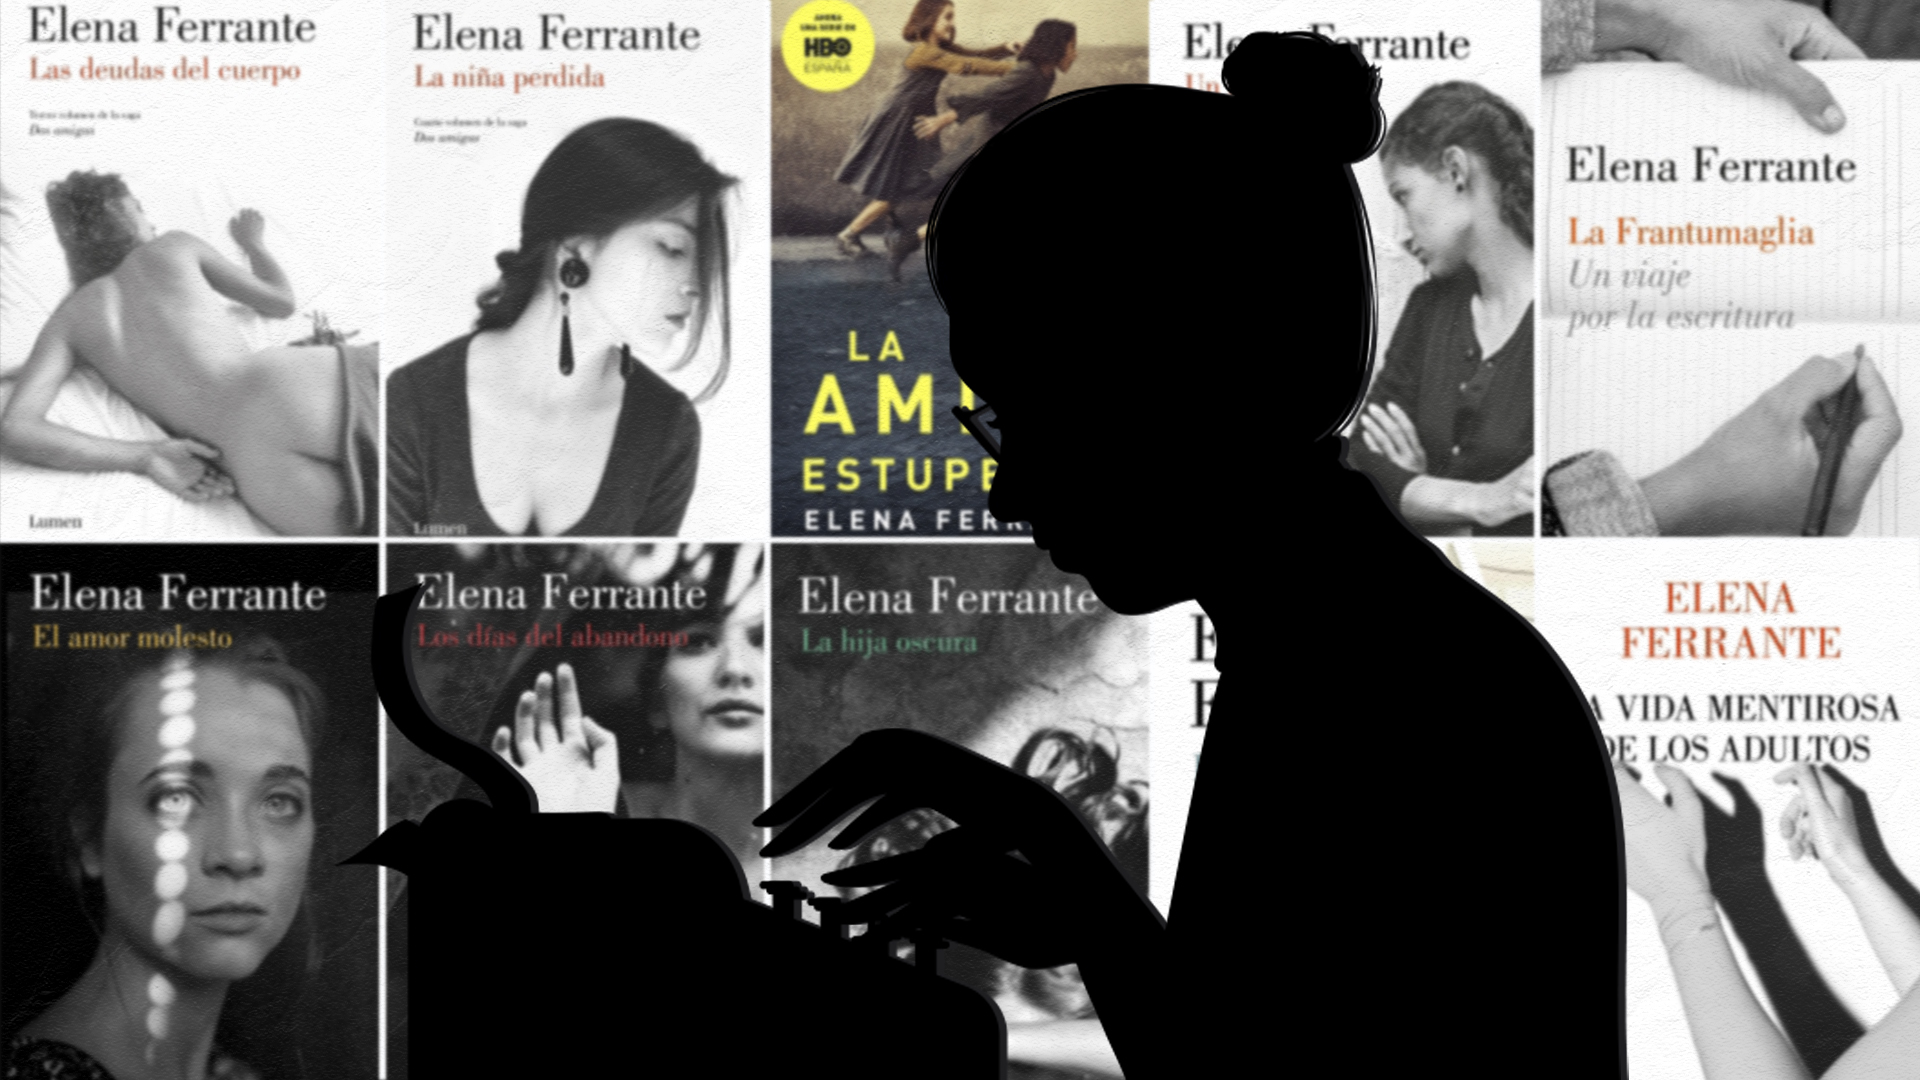 ¿Quién es Elena Ferrante?: leé gratis una “guía” sobre el mayor misterio de la literatura actual